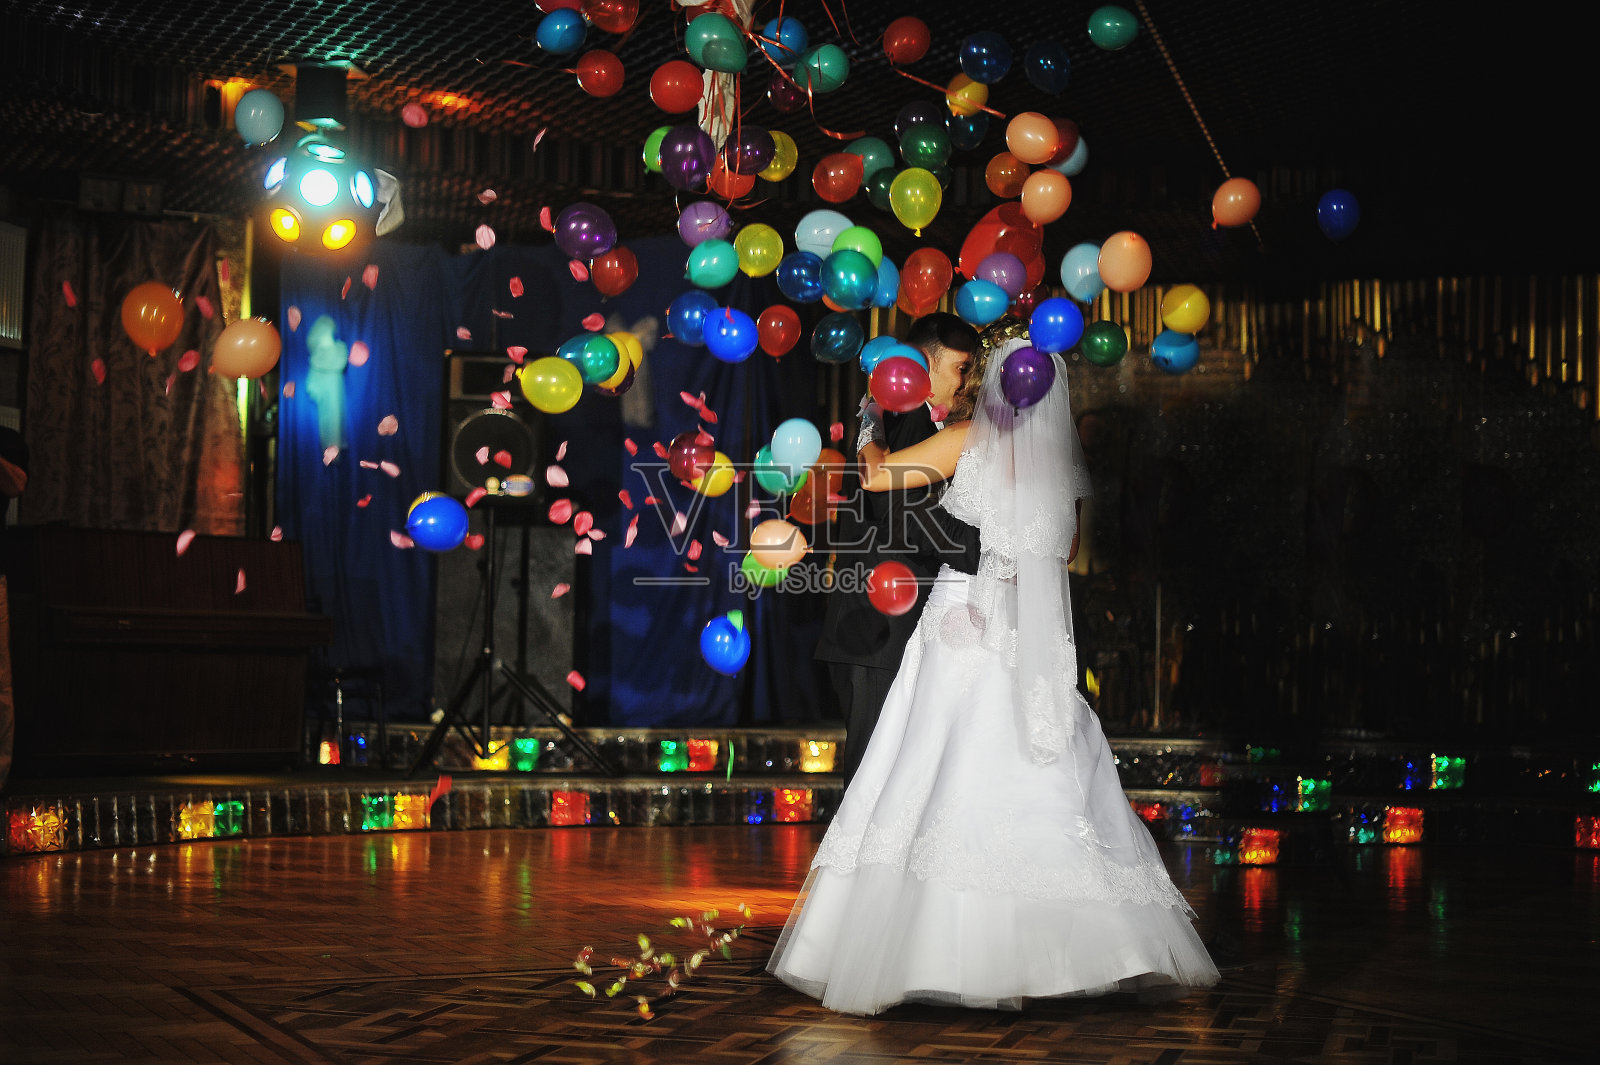 婚礼上用夜灯和气球跳舞照片摄影图片